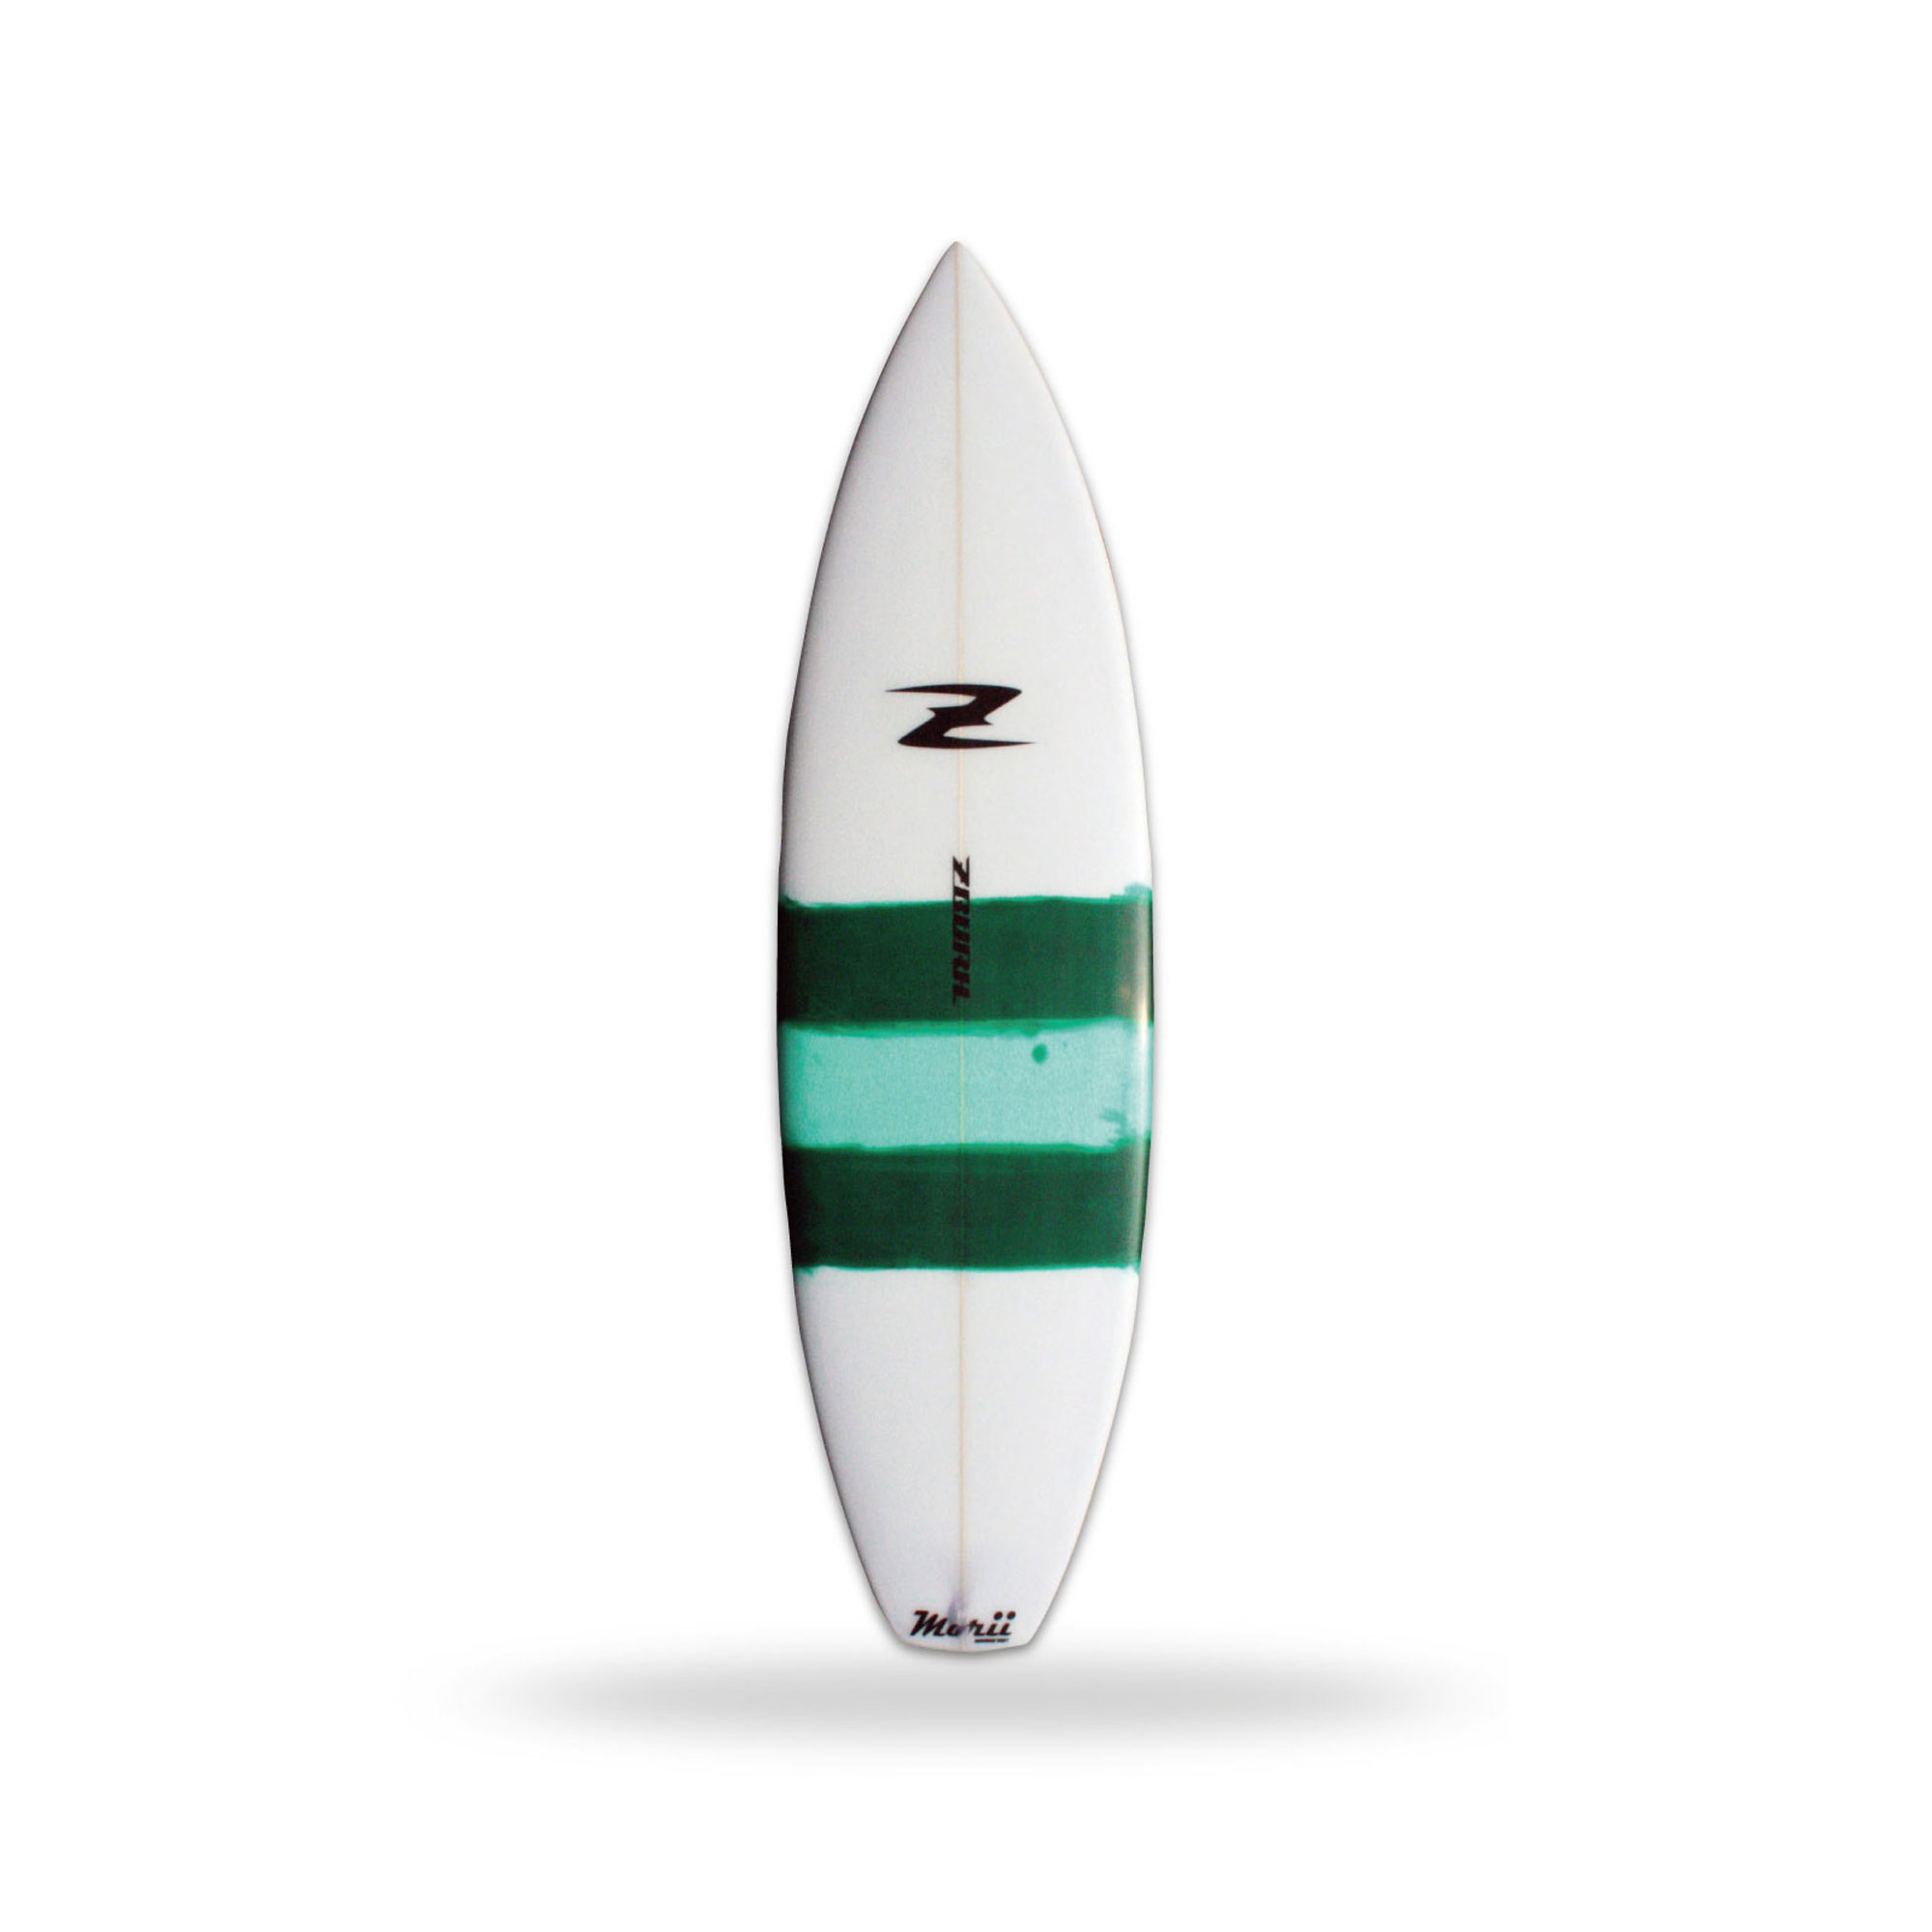 SHELTER – ZBURH CUSTOM SURFBOARDS